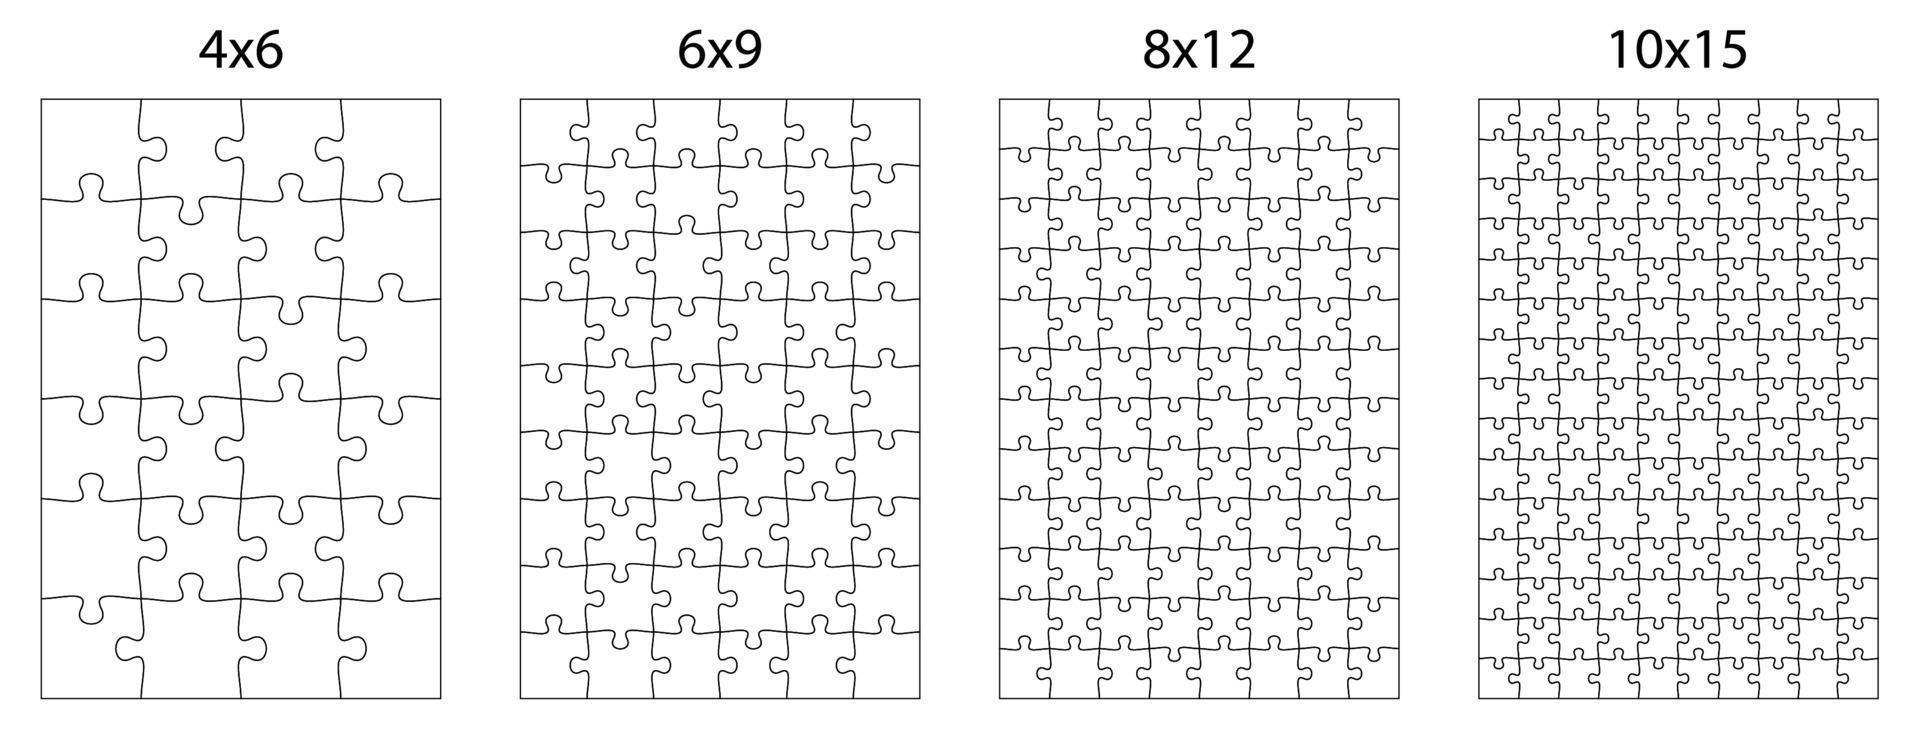 SVG > quebra-cabeça peças forma enigma - Imagem e ícone grátis do SVG.